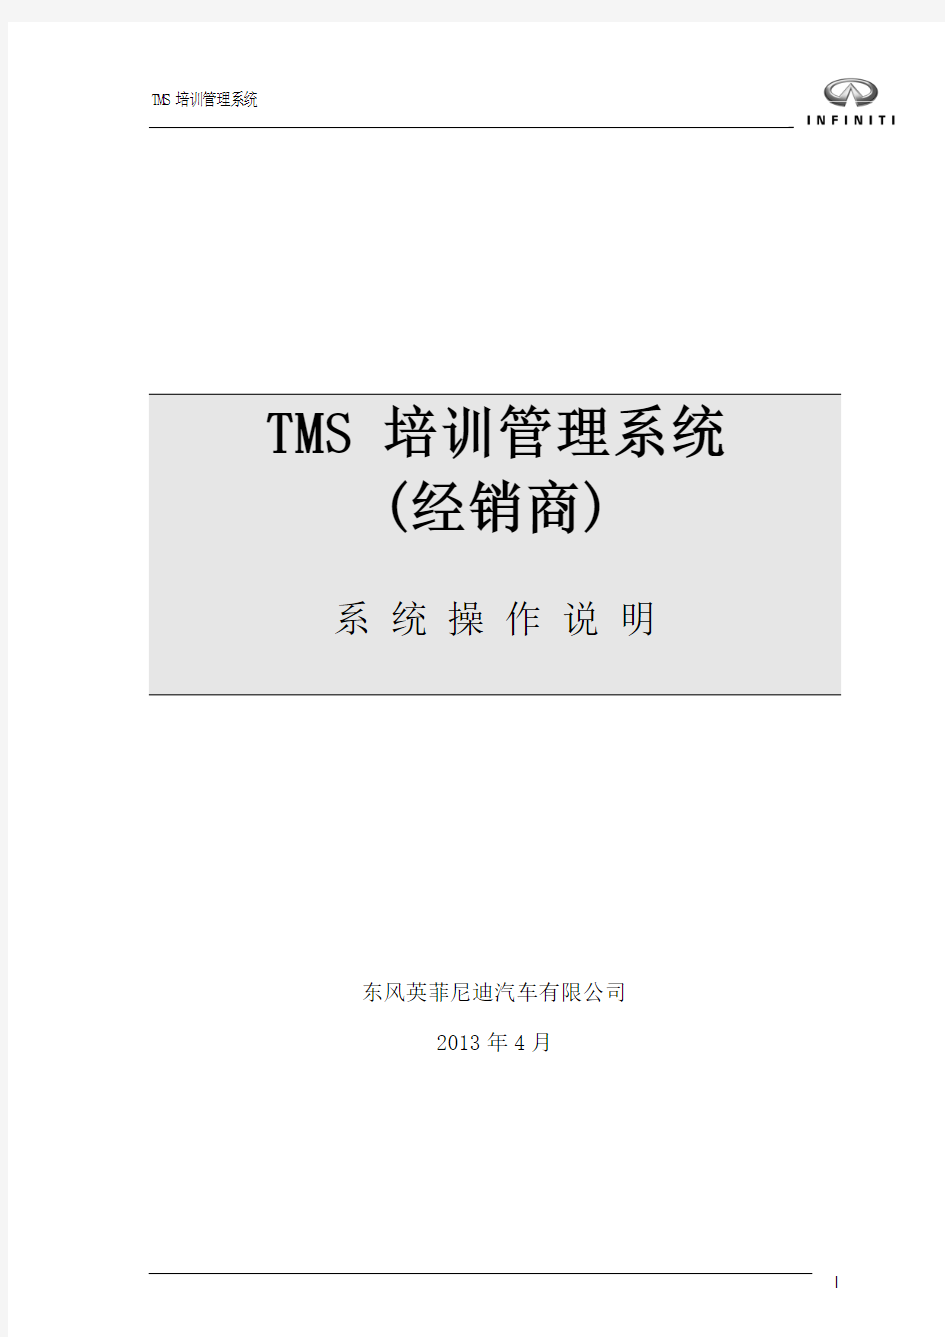 TMS培训管理系统用户操作手册